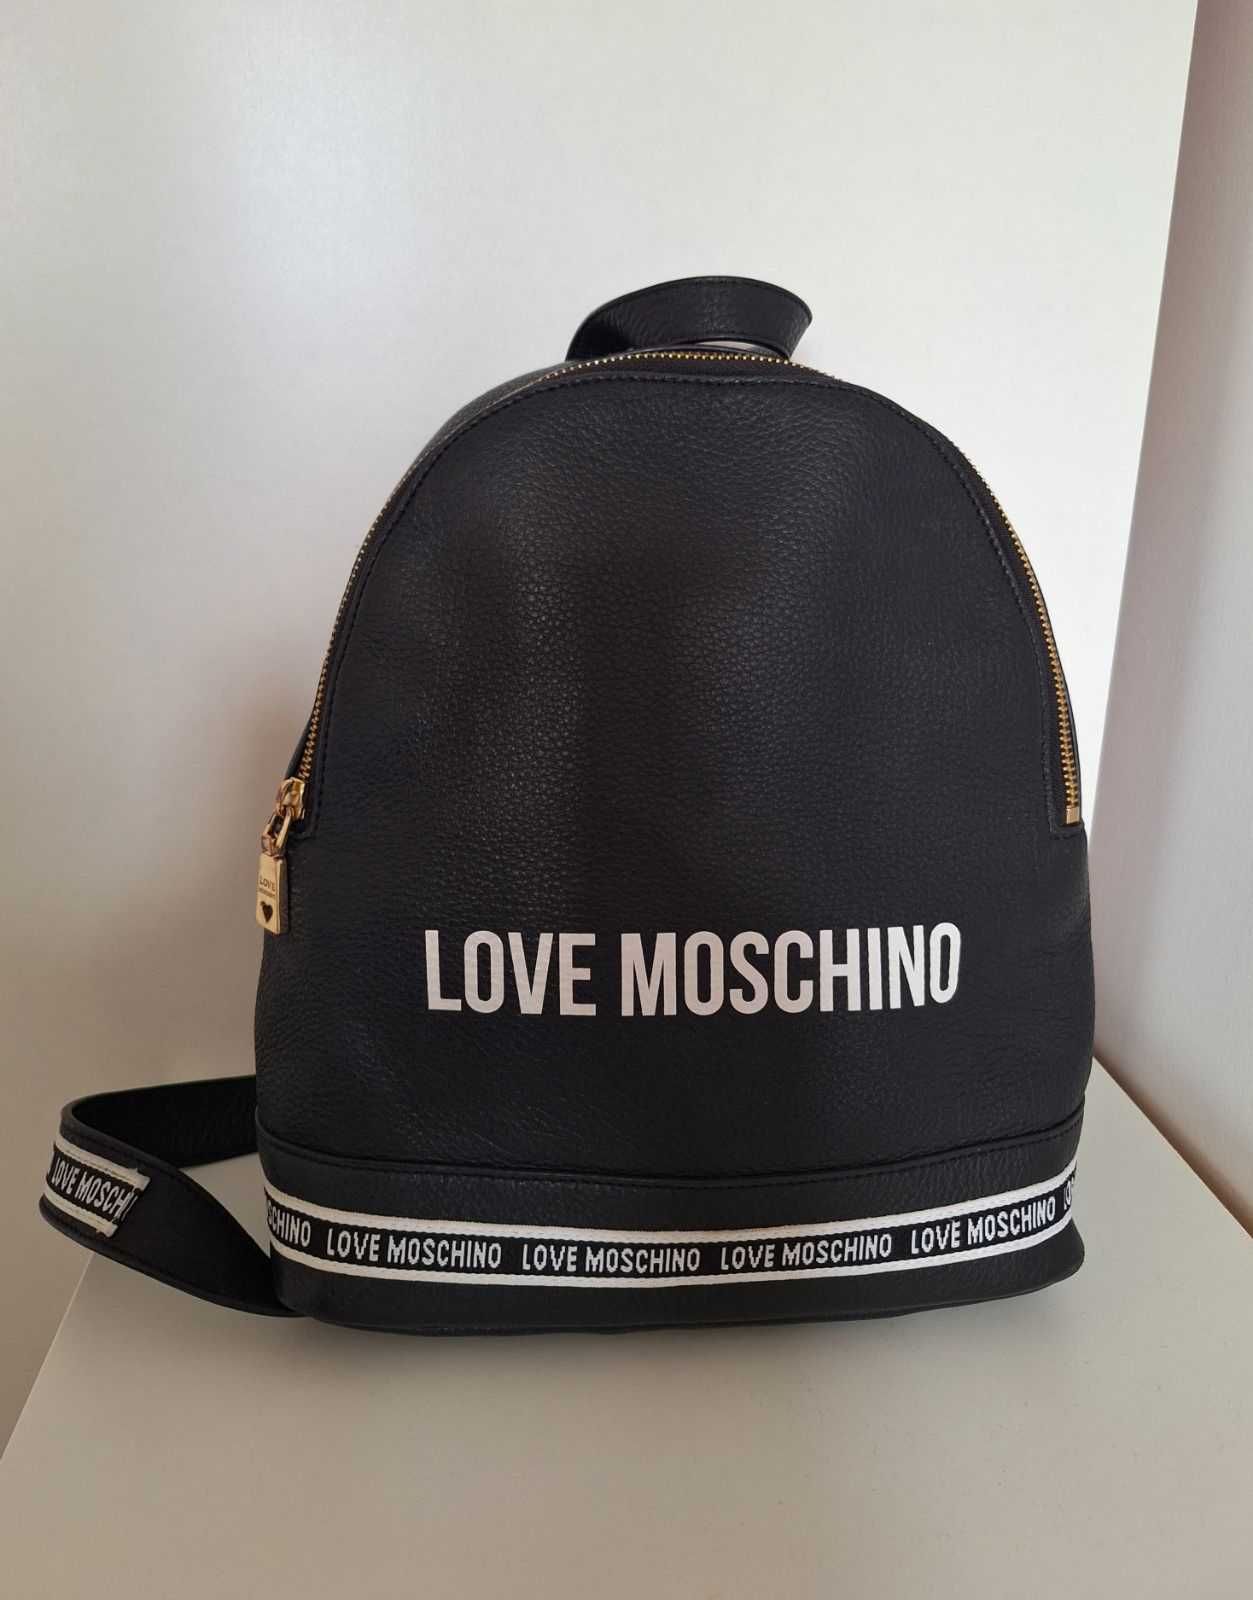 Plecak skórzany Love Moschino używany